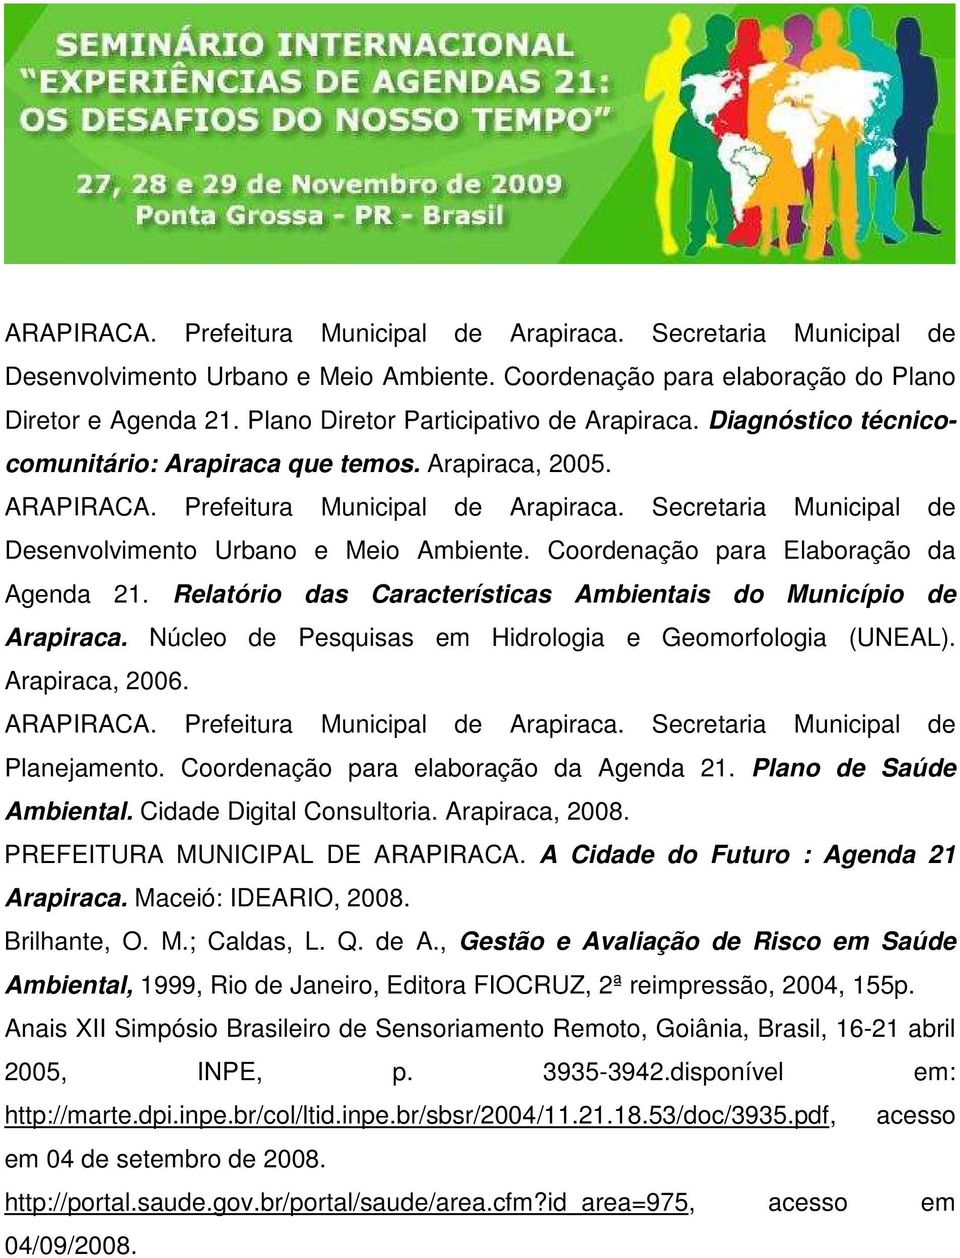 Secretaria Municipal de Desenvolvimento Urbano e Meio Ambiente. Coordenação para Elaboração da Agenda 21. Relatório das Características Ambientais do Município de Arapiraca.